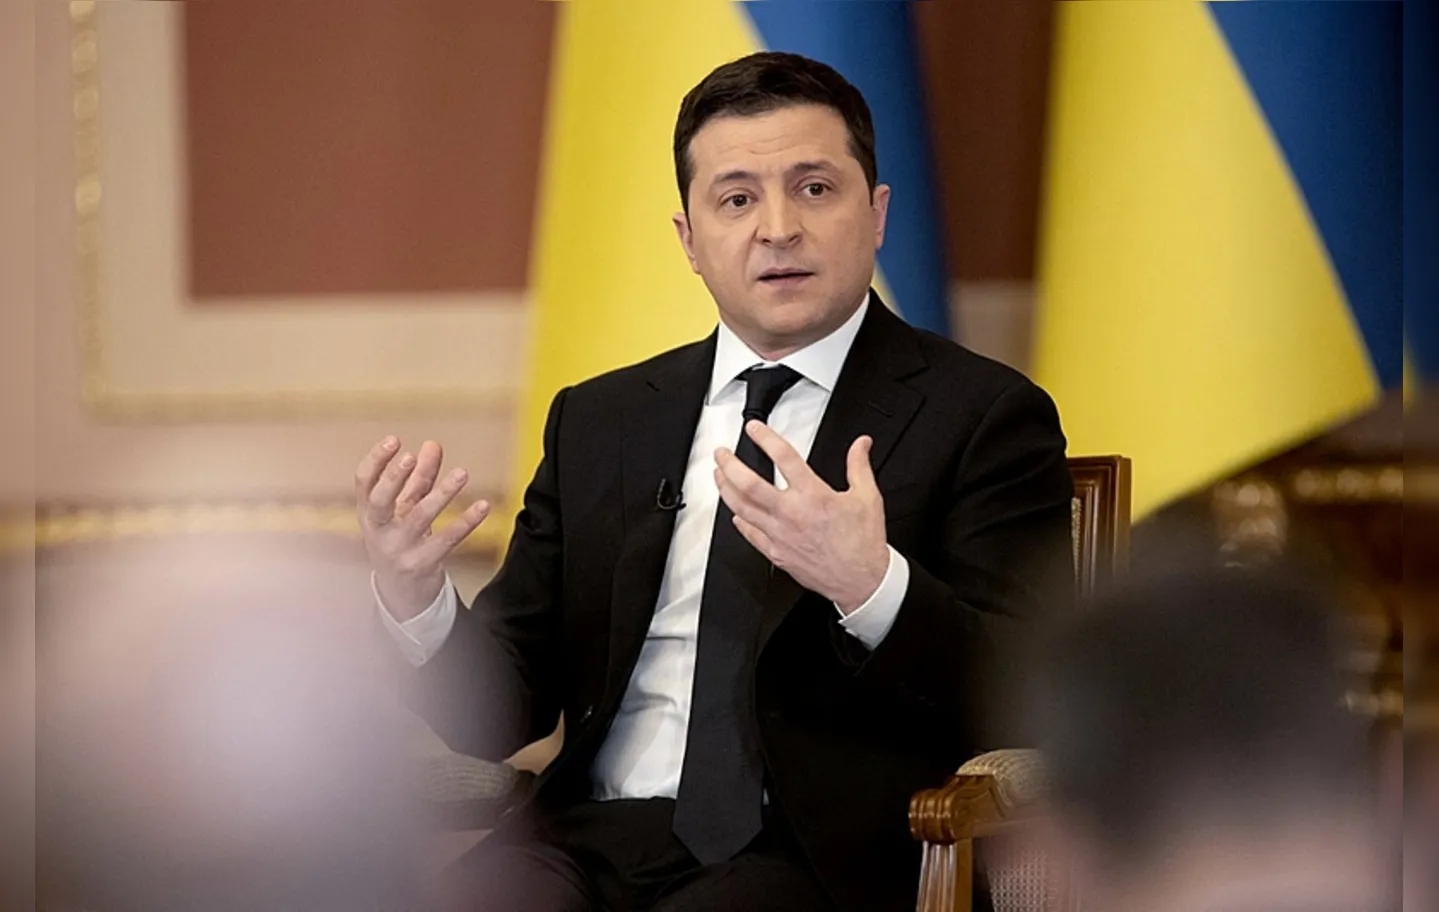 Chefe de Estado desde abril de 2019, Zelensky tem sido o símbolo da resistência ucraniana